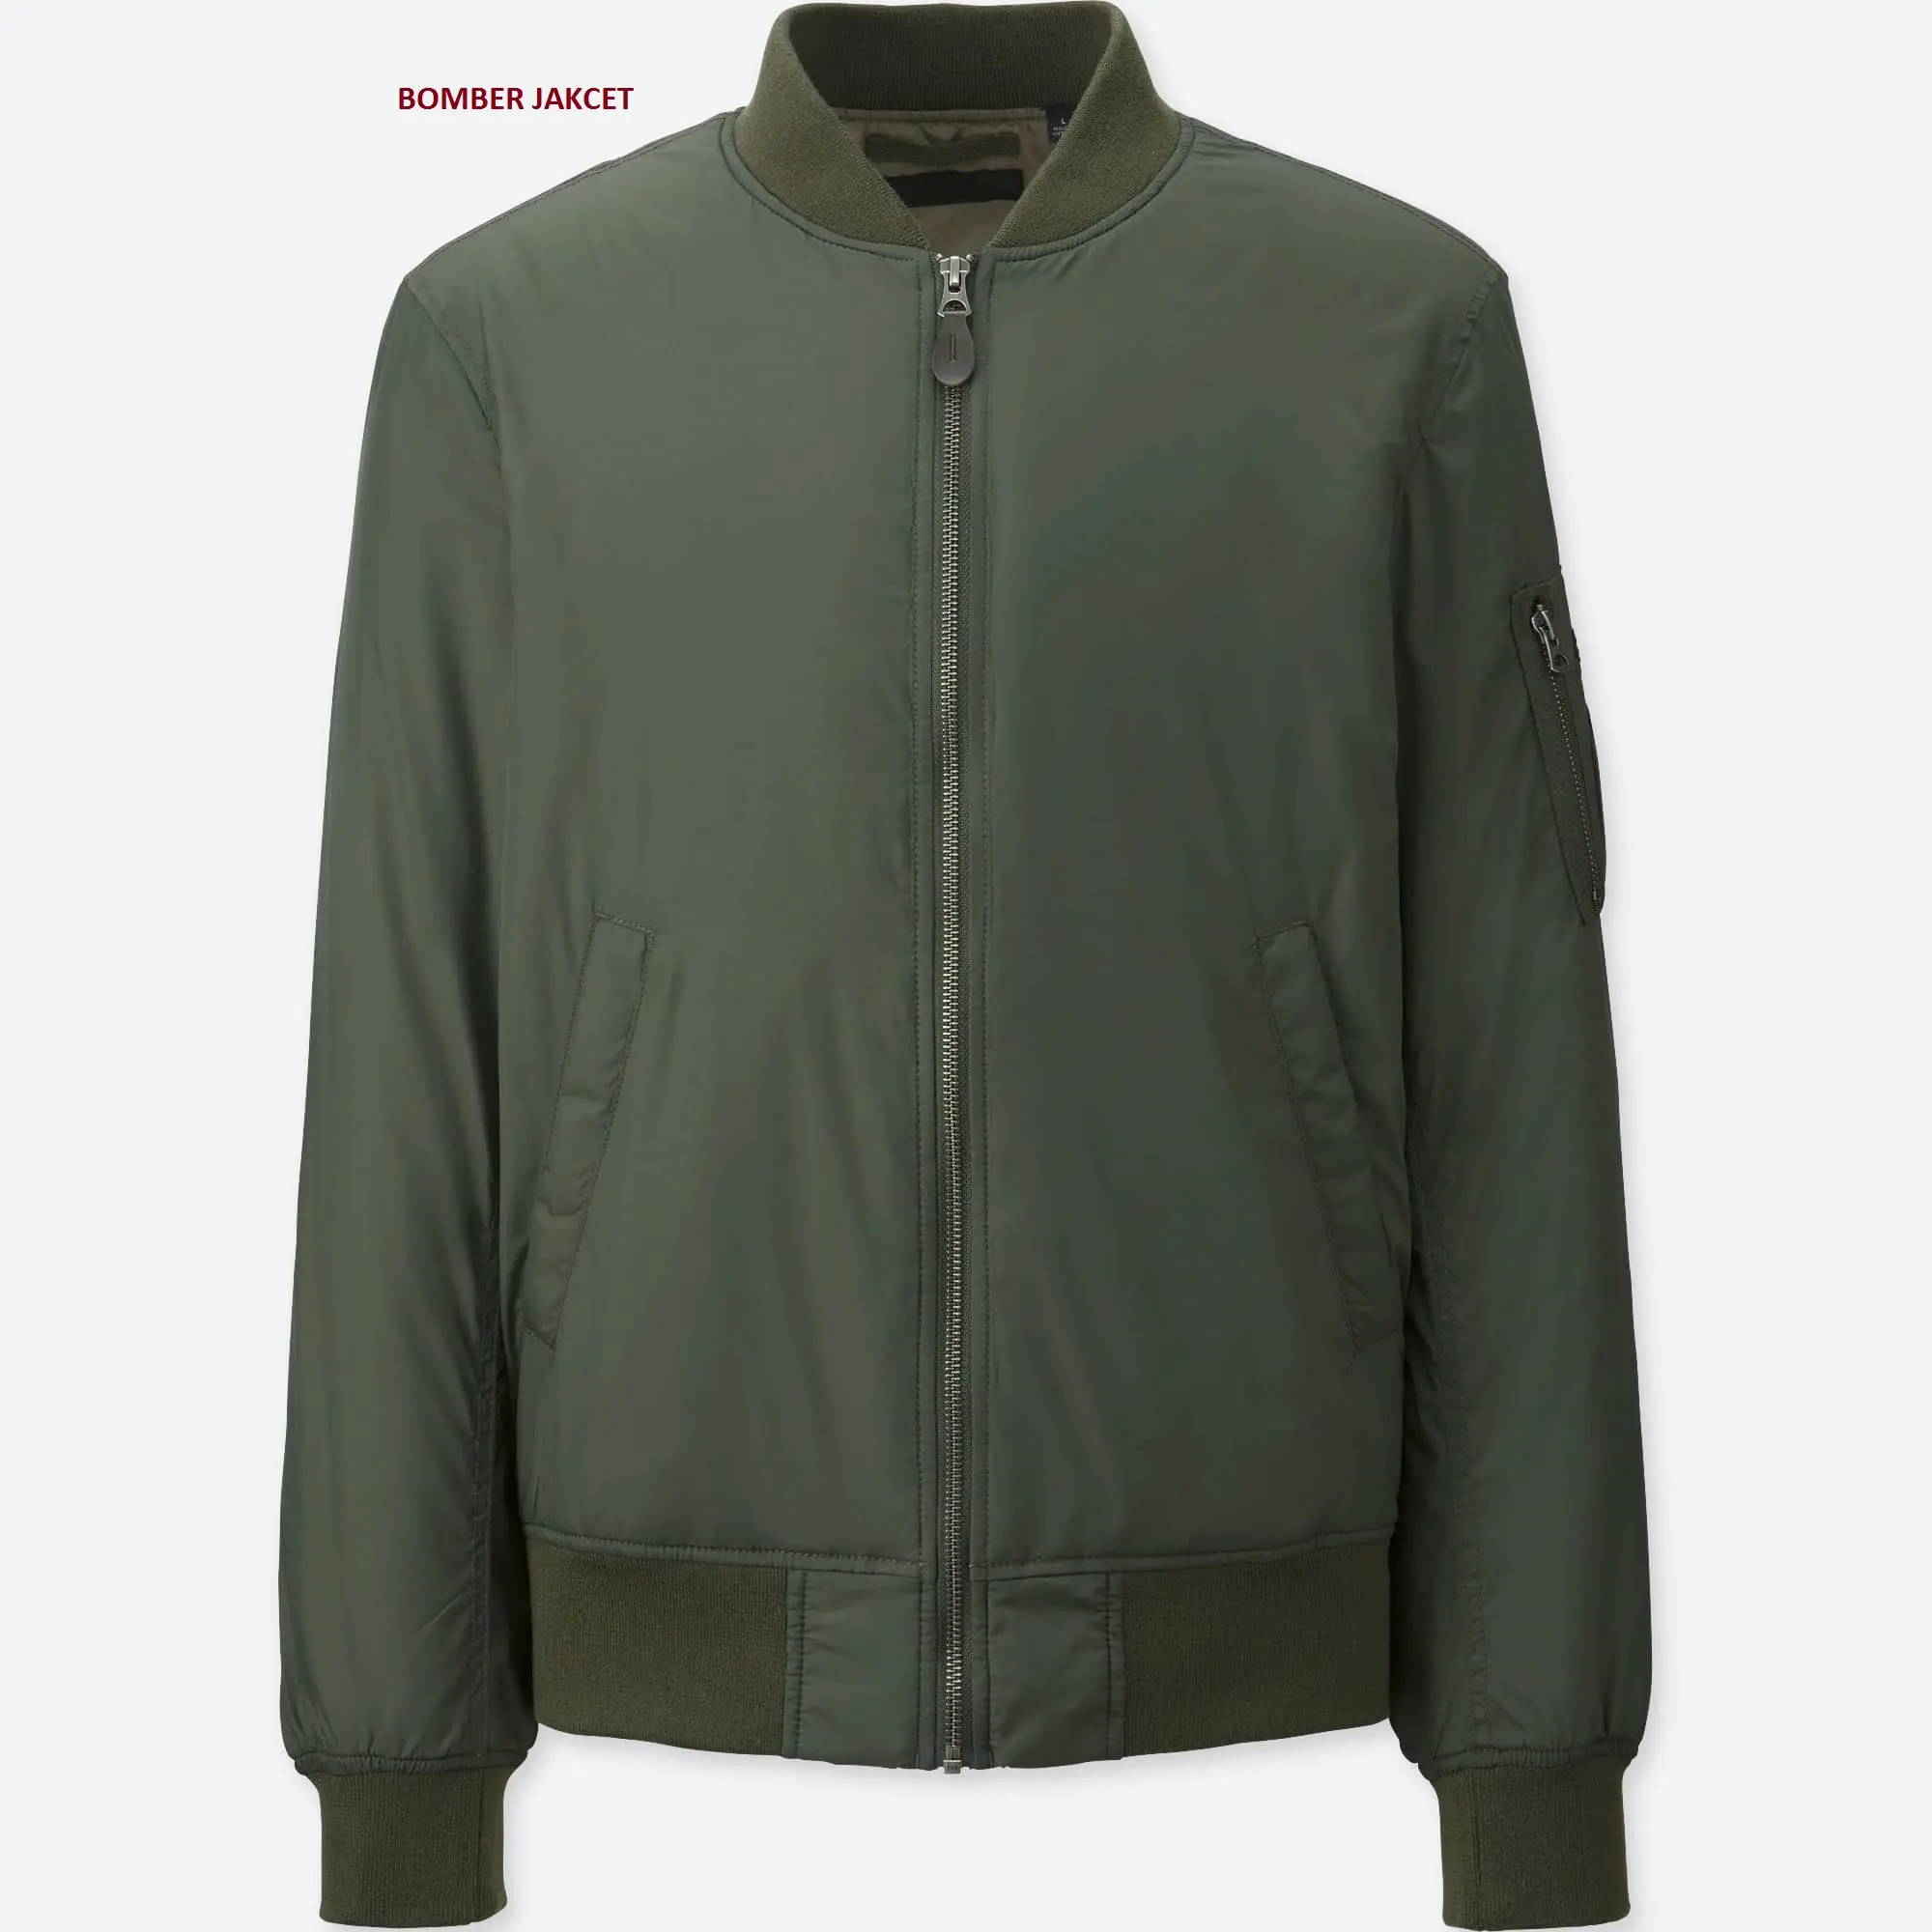 La migliore giacca Bomber Taslan silm fit per uomo con giacca verde oliva e altri colori disponibili